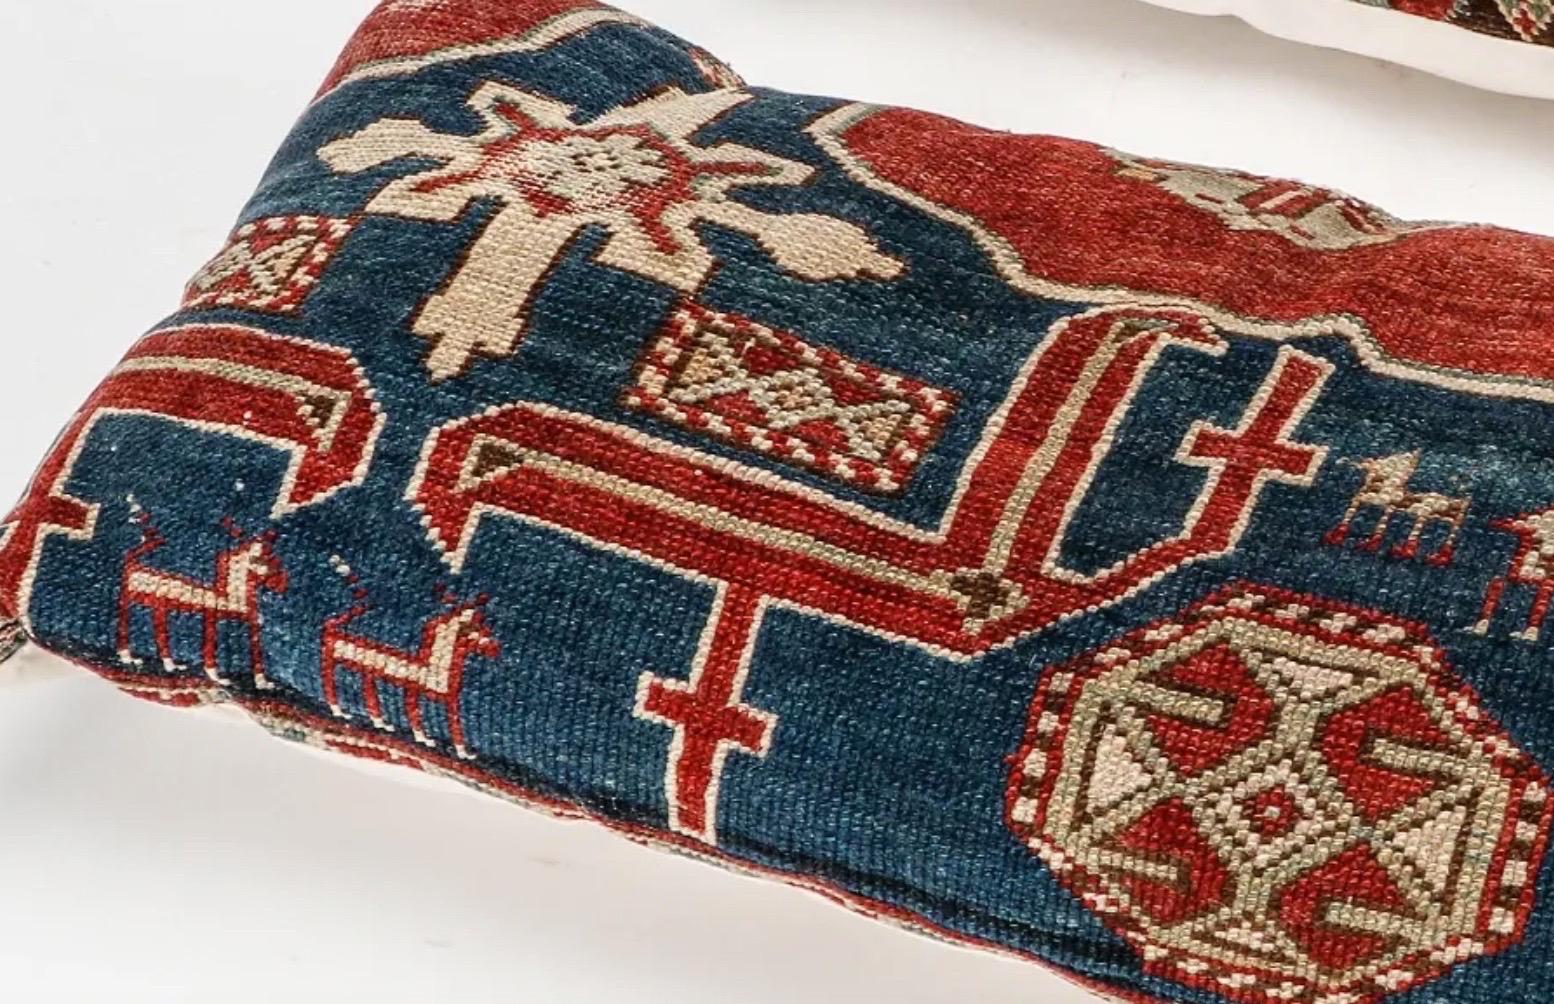 Wunderschönes antikes persisches Lumbalteppich-Kissen

Der größere misst: 17 x 7 x 5 Zoll 

